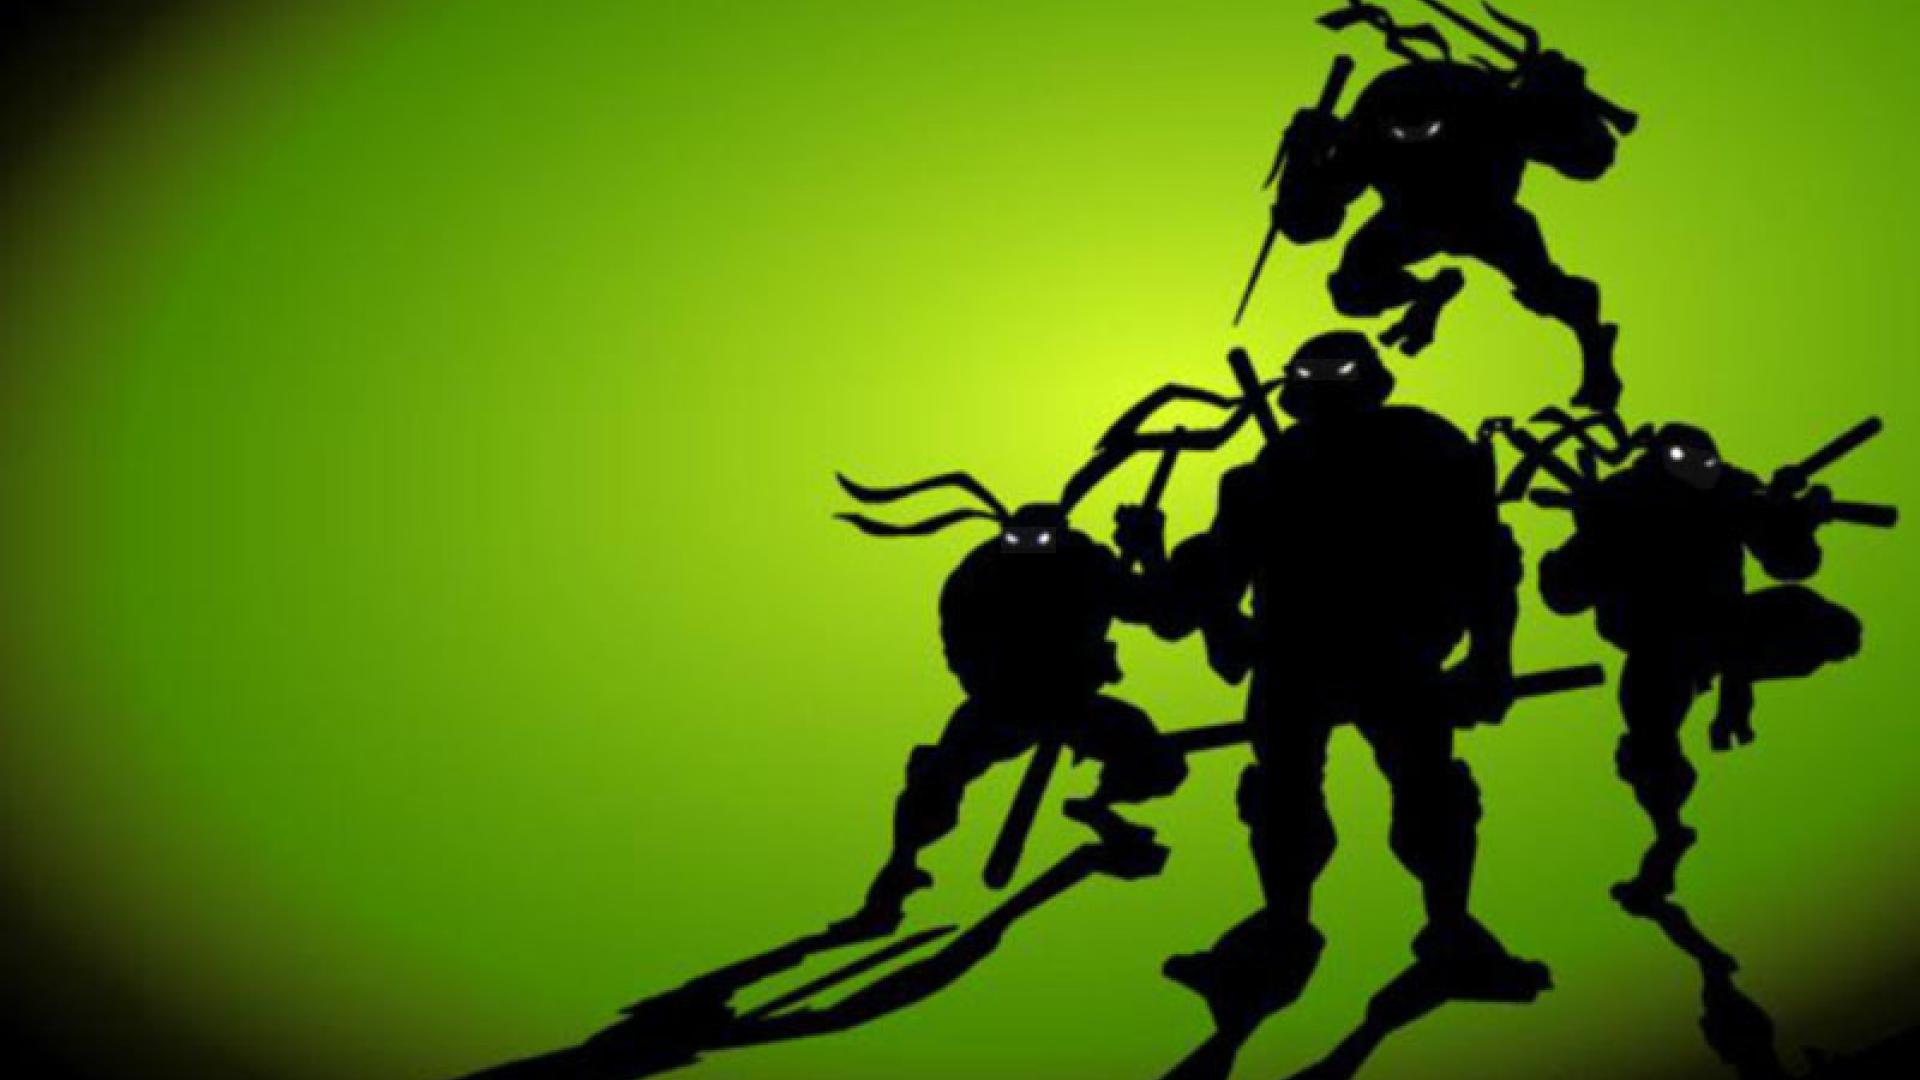 Teenage Mutant Ninja Turtles Video Game In The Works Gamers Sphere